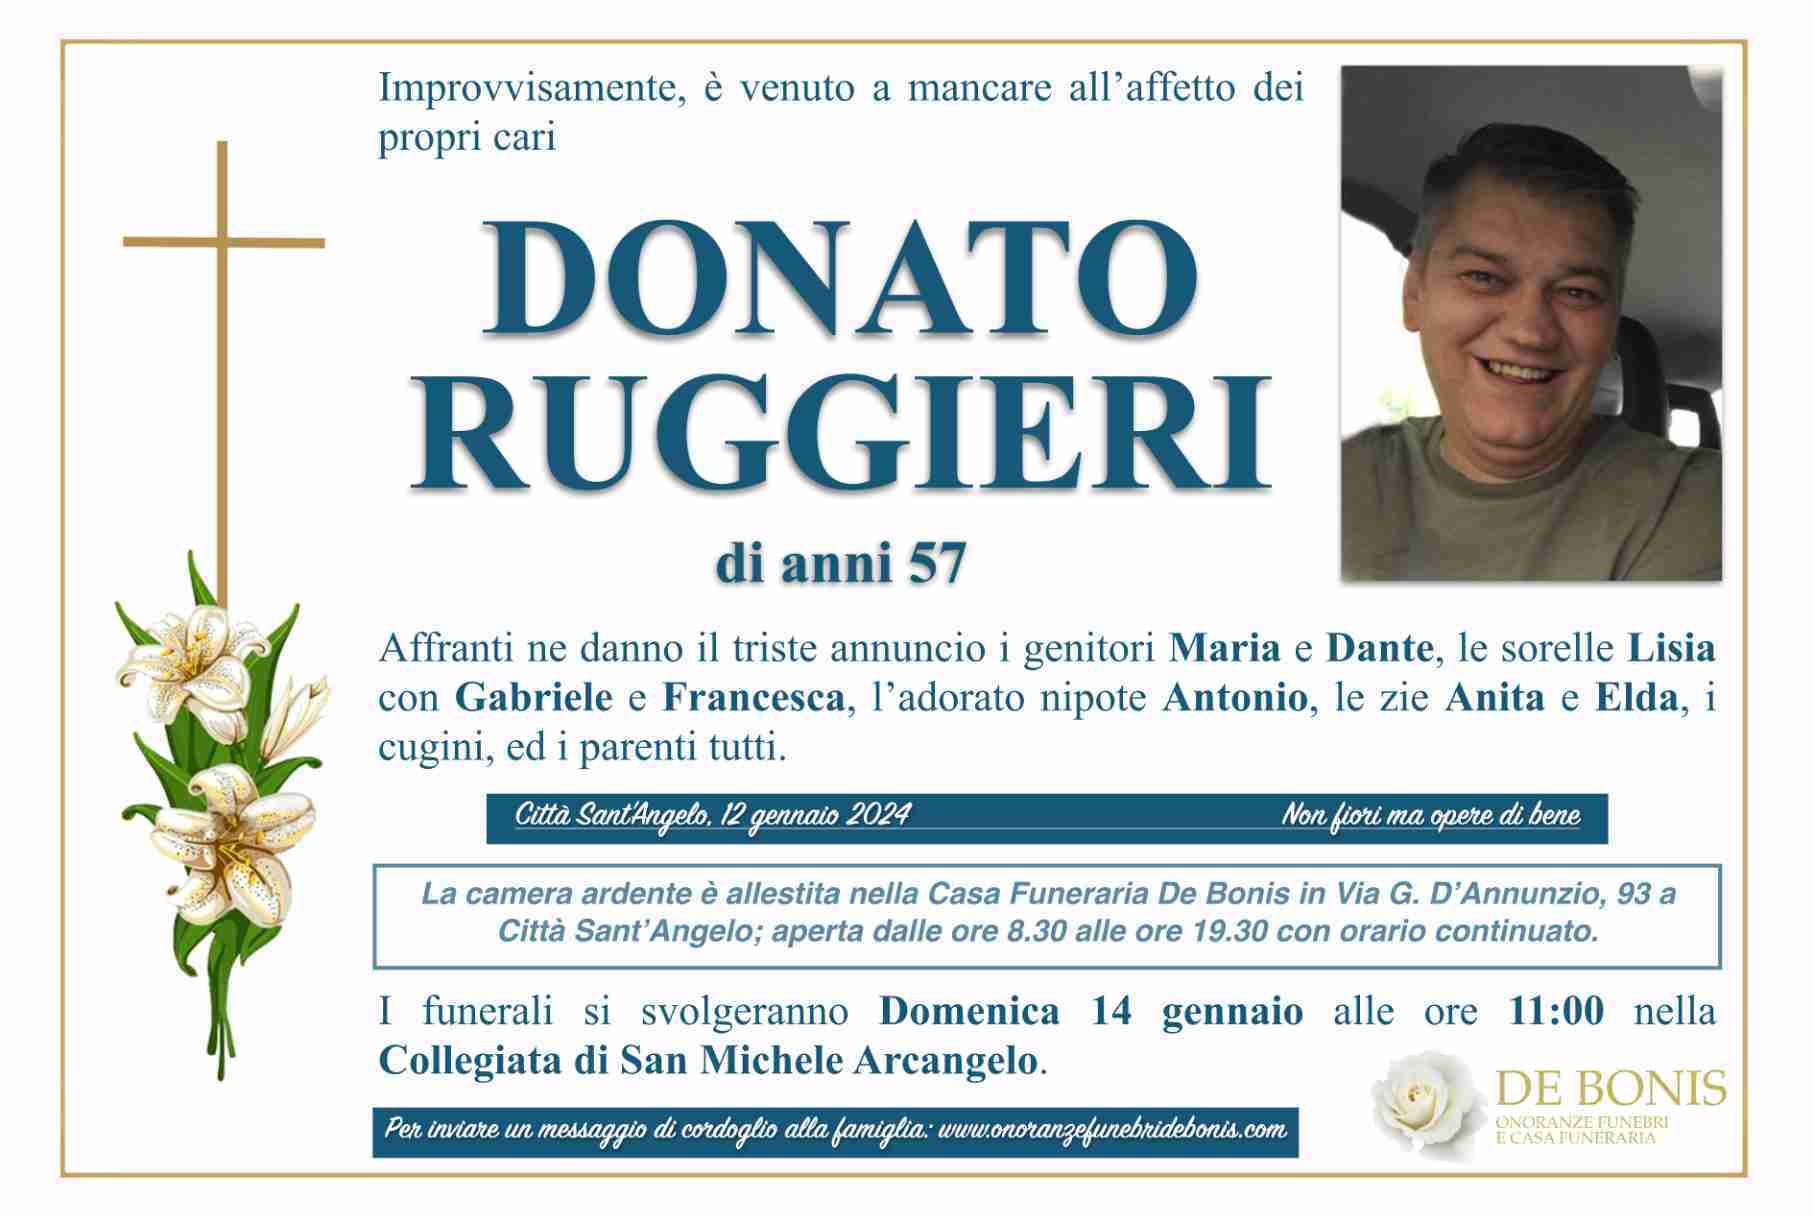 Donato Ruggieri